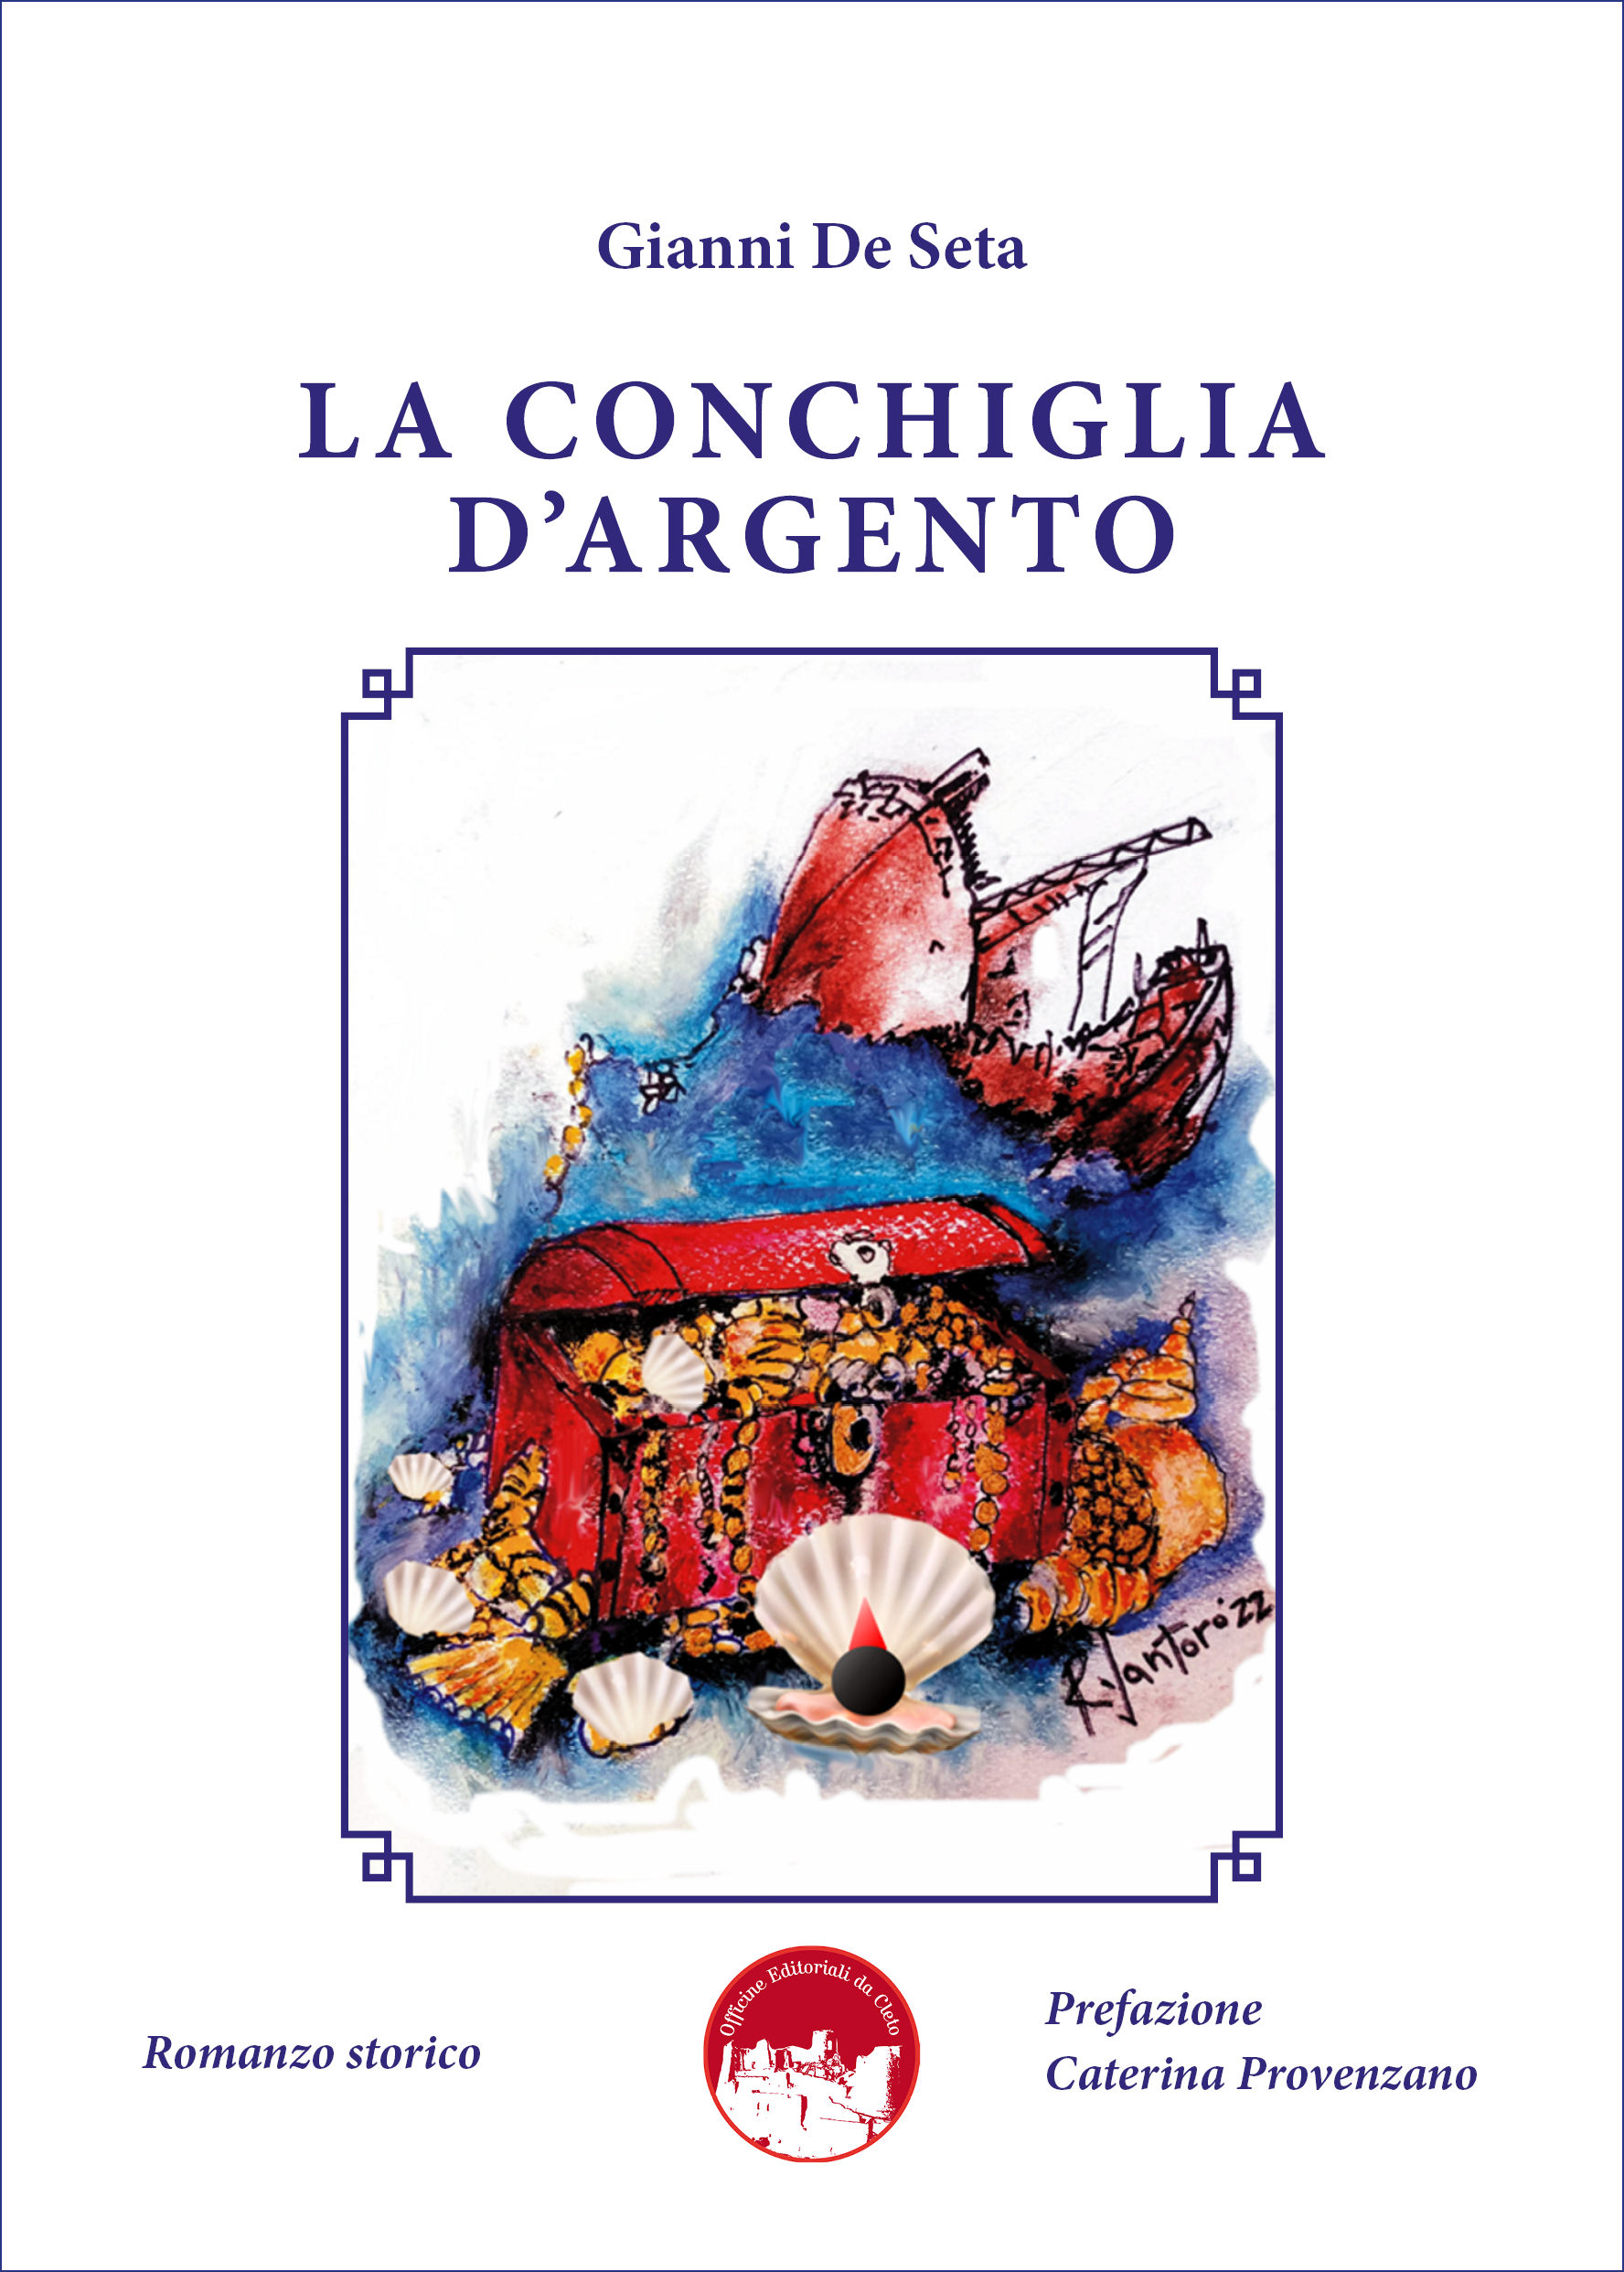 La copertina del libro dal titolo LA CONCHIGLIA D'ARGENTO di Gianni De Seta